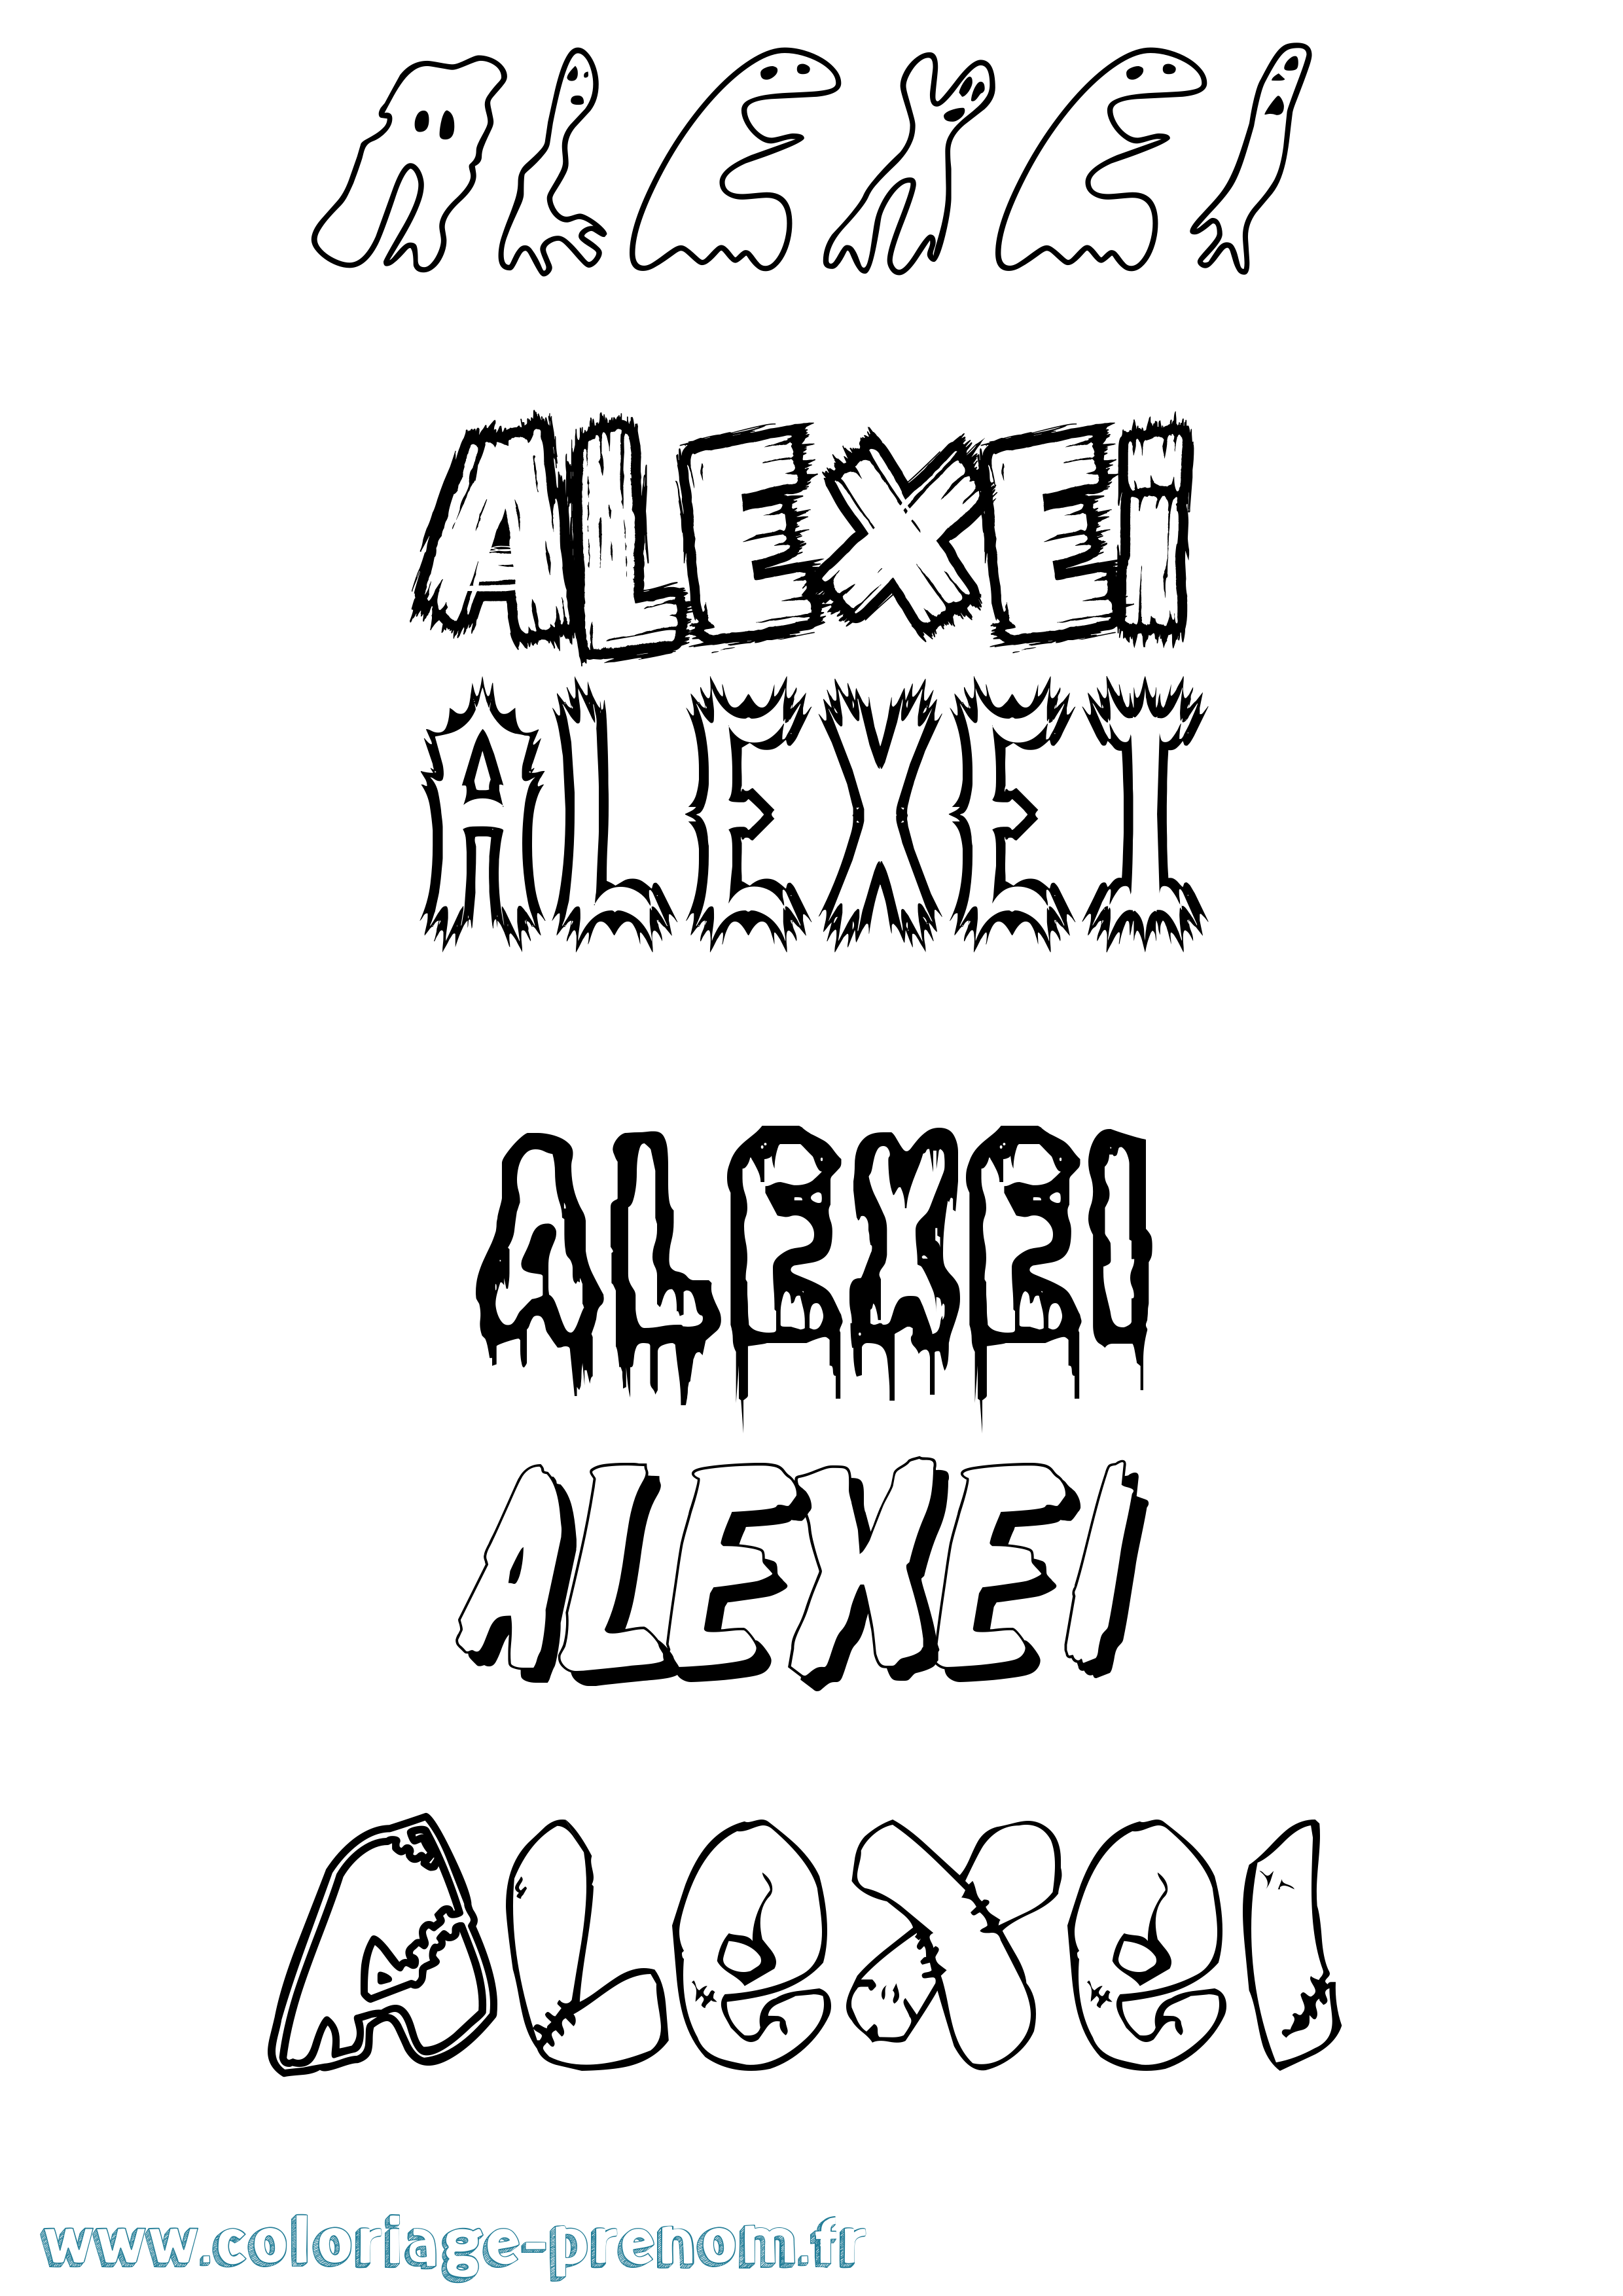 Coloriage prénom Alexei Frisson